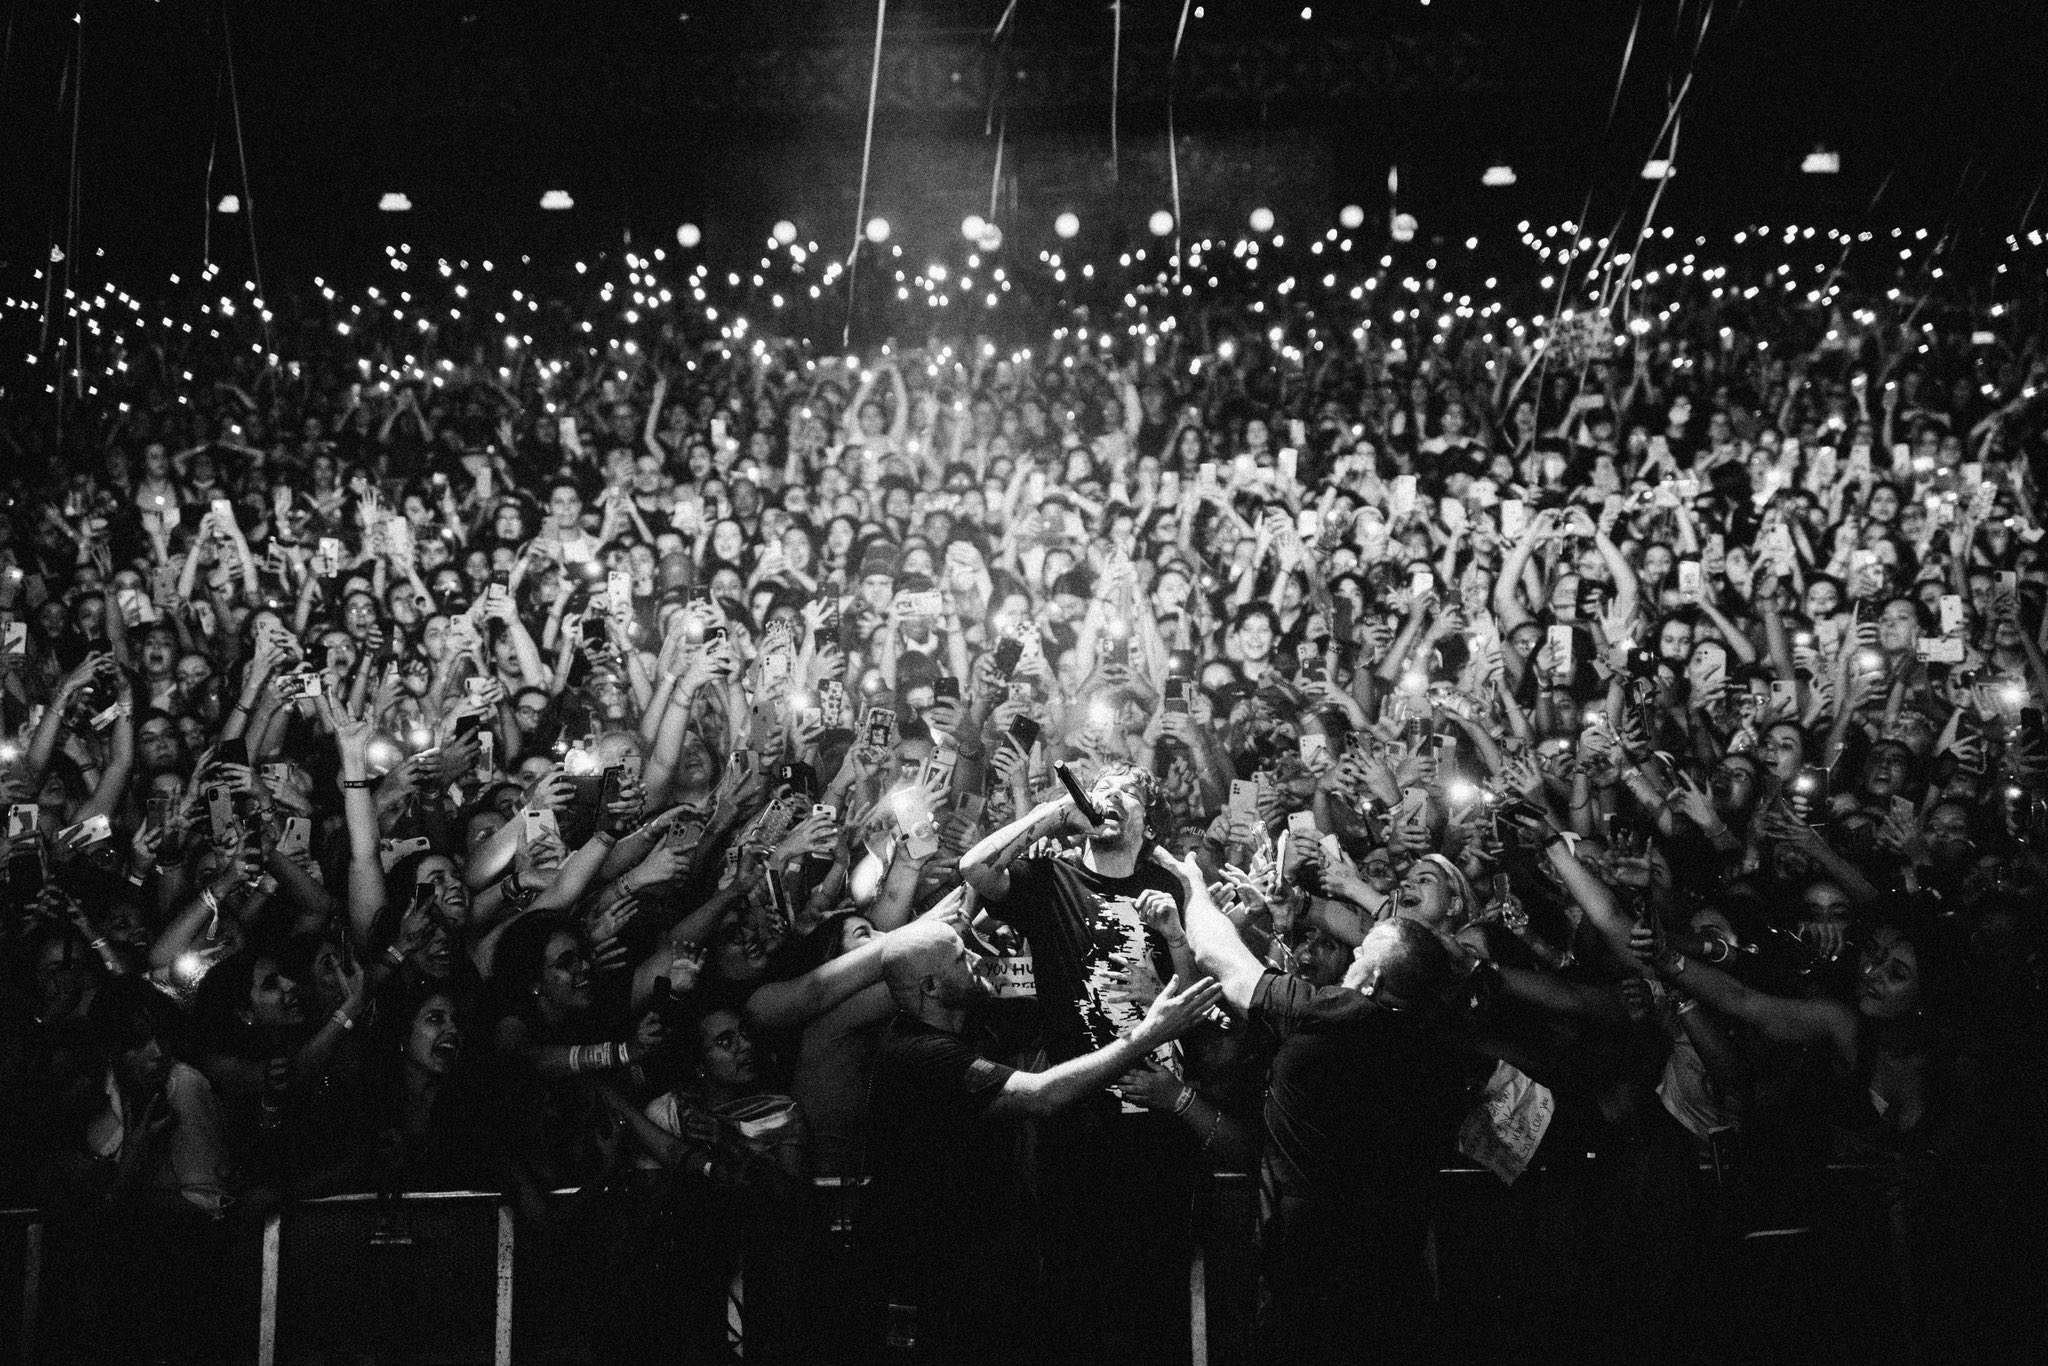 A imagem mostra o cantor Louis Tomlinson, homem branco de cabelos curtos, que usa uma blusa preta e tem um microfone na mão esquerda, se jogando em meio a uma plateia de milhares de pessoas. A foto está em preto e branco e conseguimos ver várias luzes refletidas ao fundo.